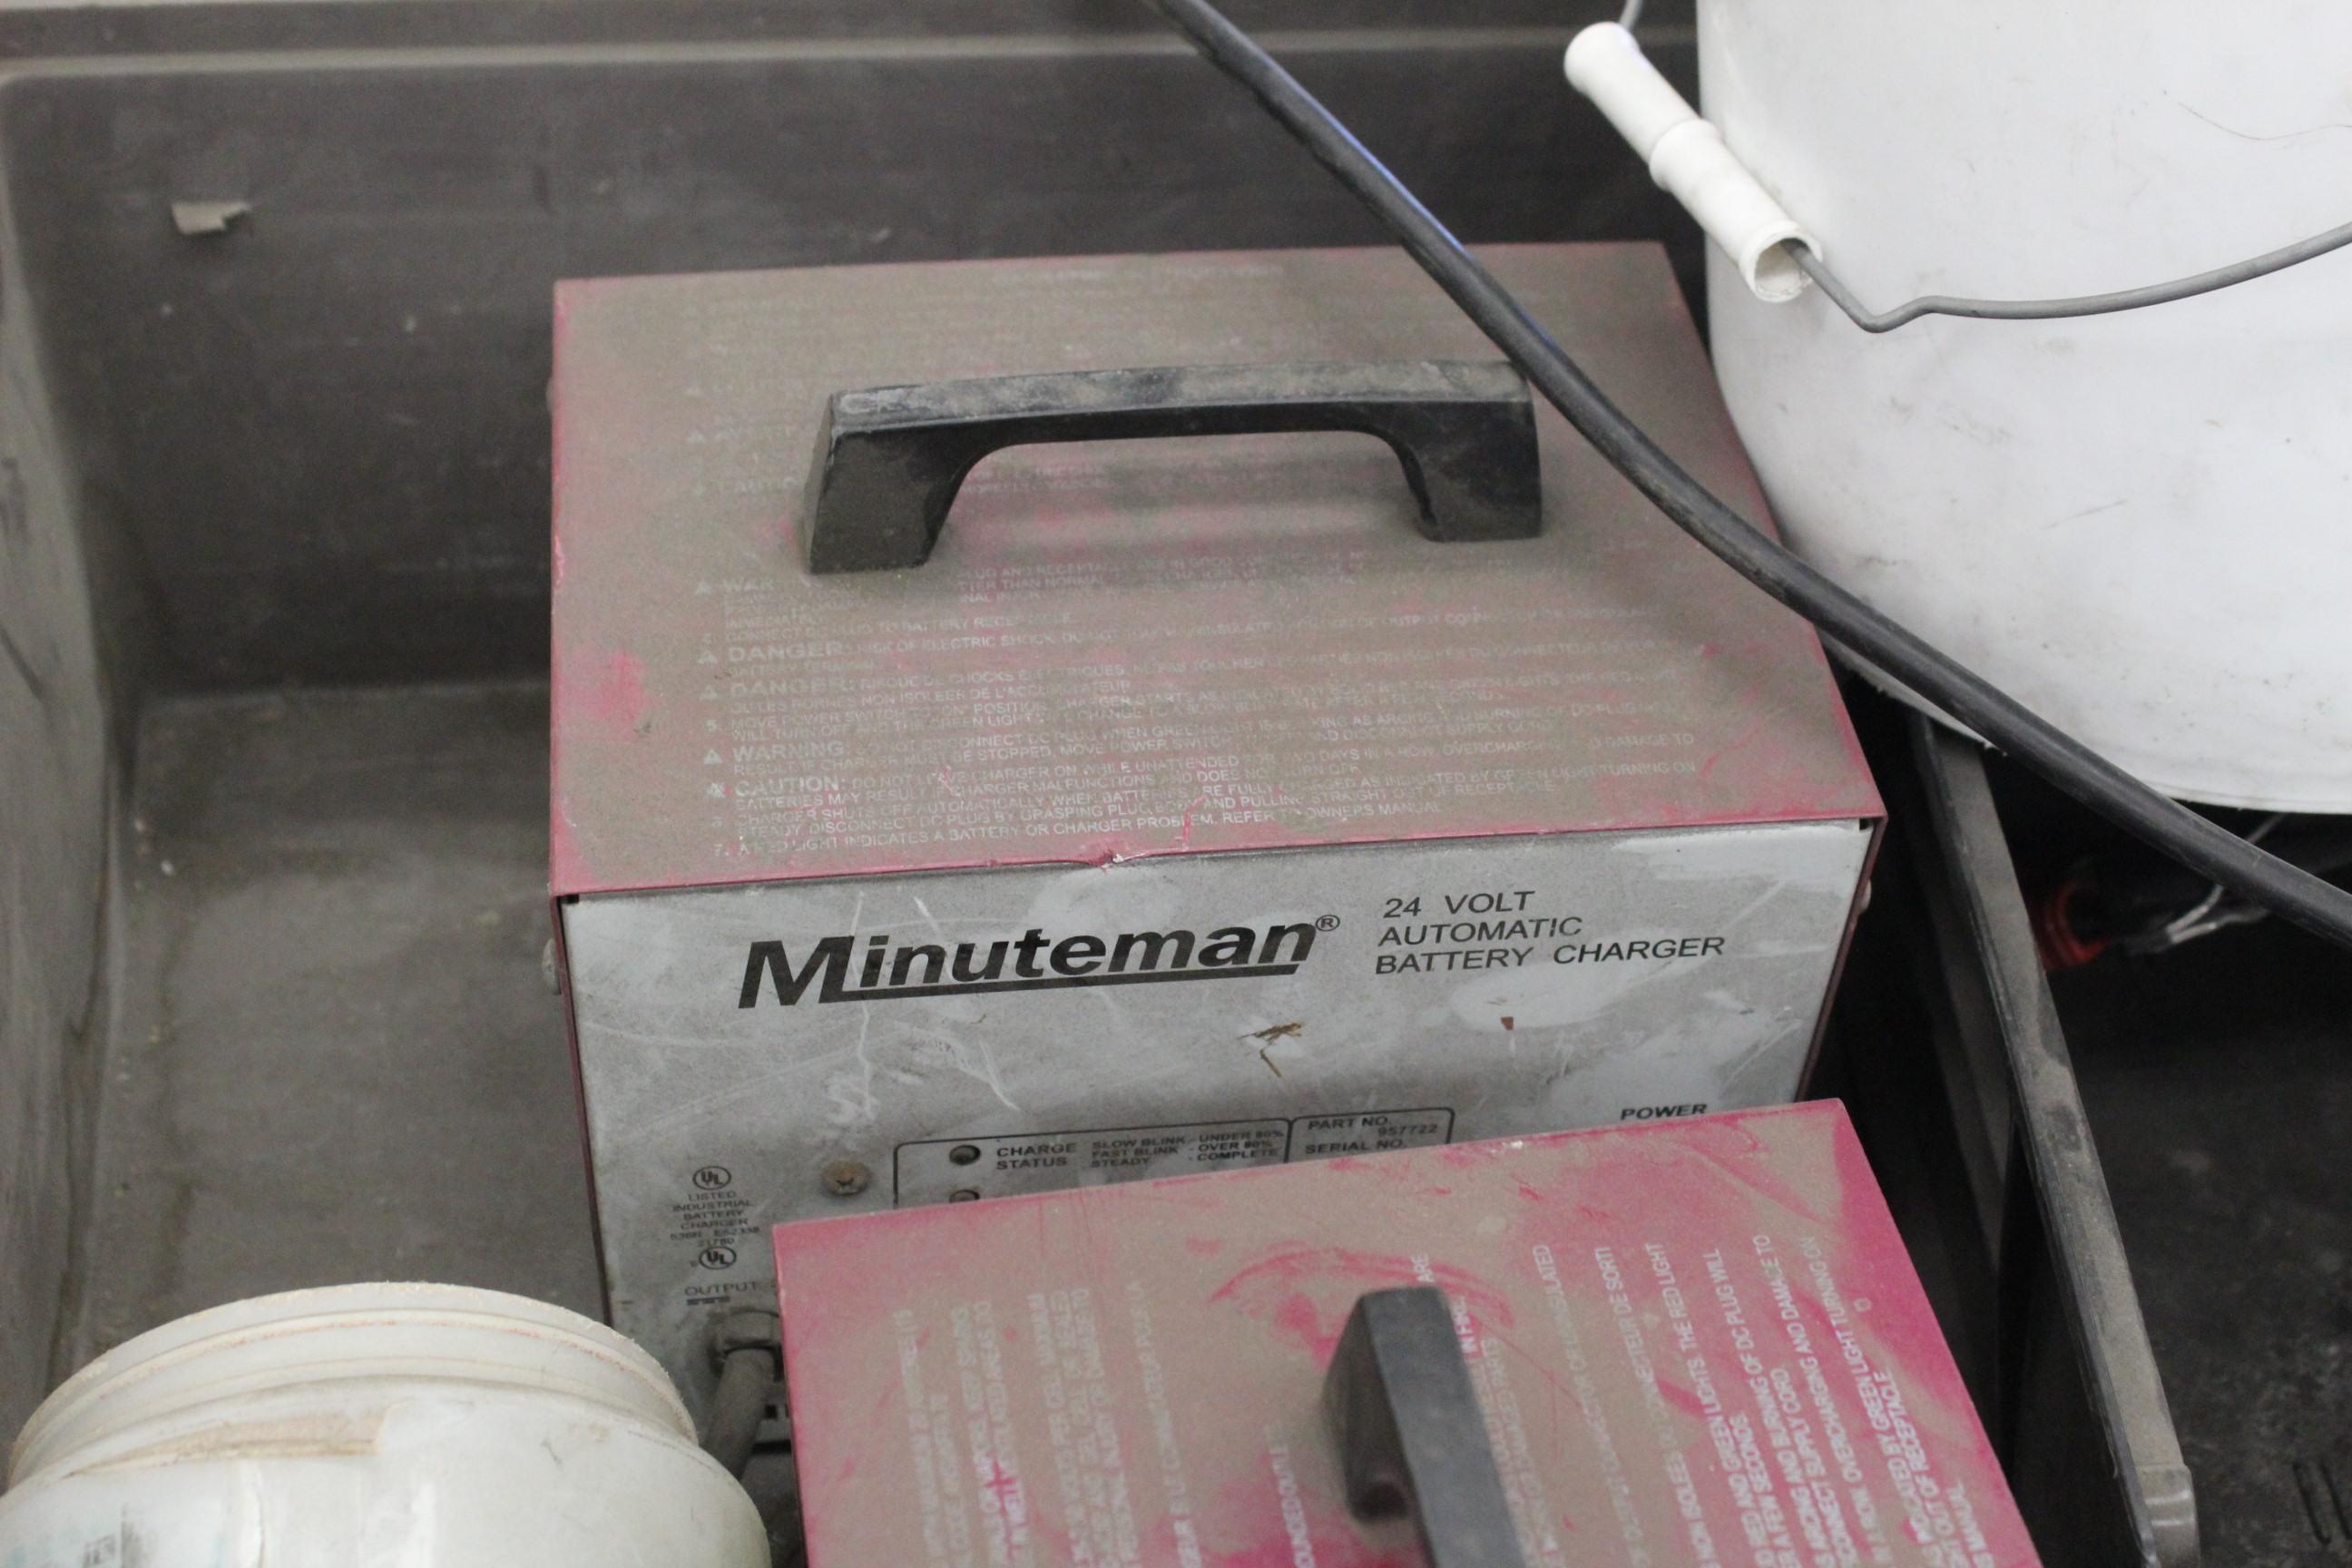 MinuteMan 170 Floor Scrubber